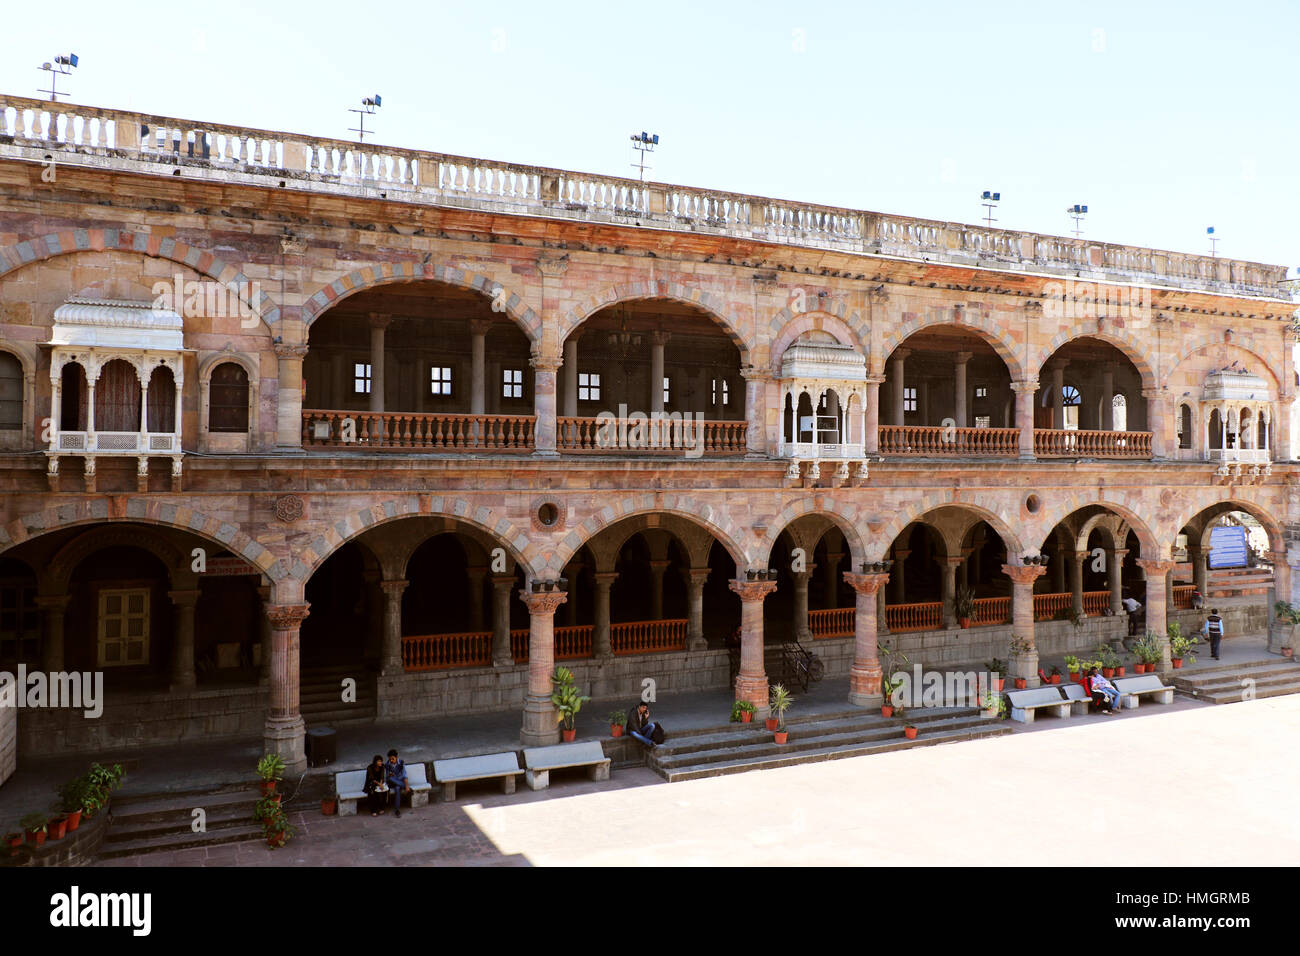 Rajwada ist ein historischer Palast in Indore Stadt. Historische Architektur Rajwada (Königlicher Palast) der Holkars ist die Ikone der Indore Stadt. Es war b gebaut. Stockfoto